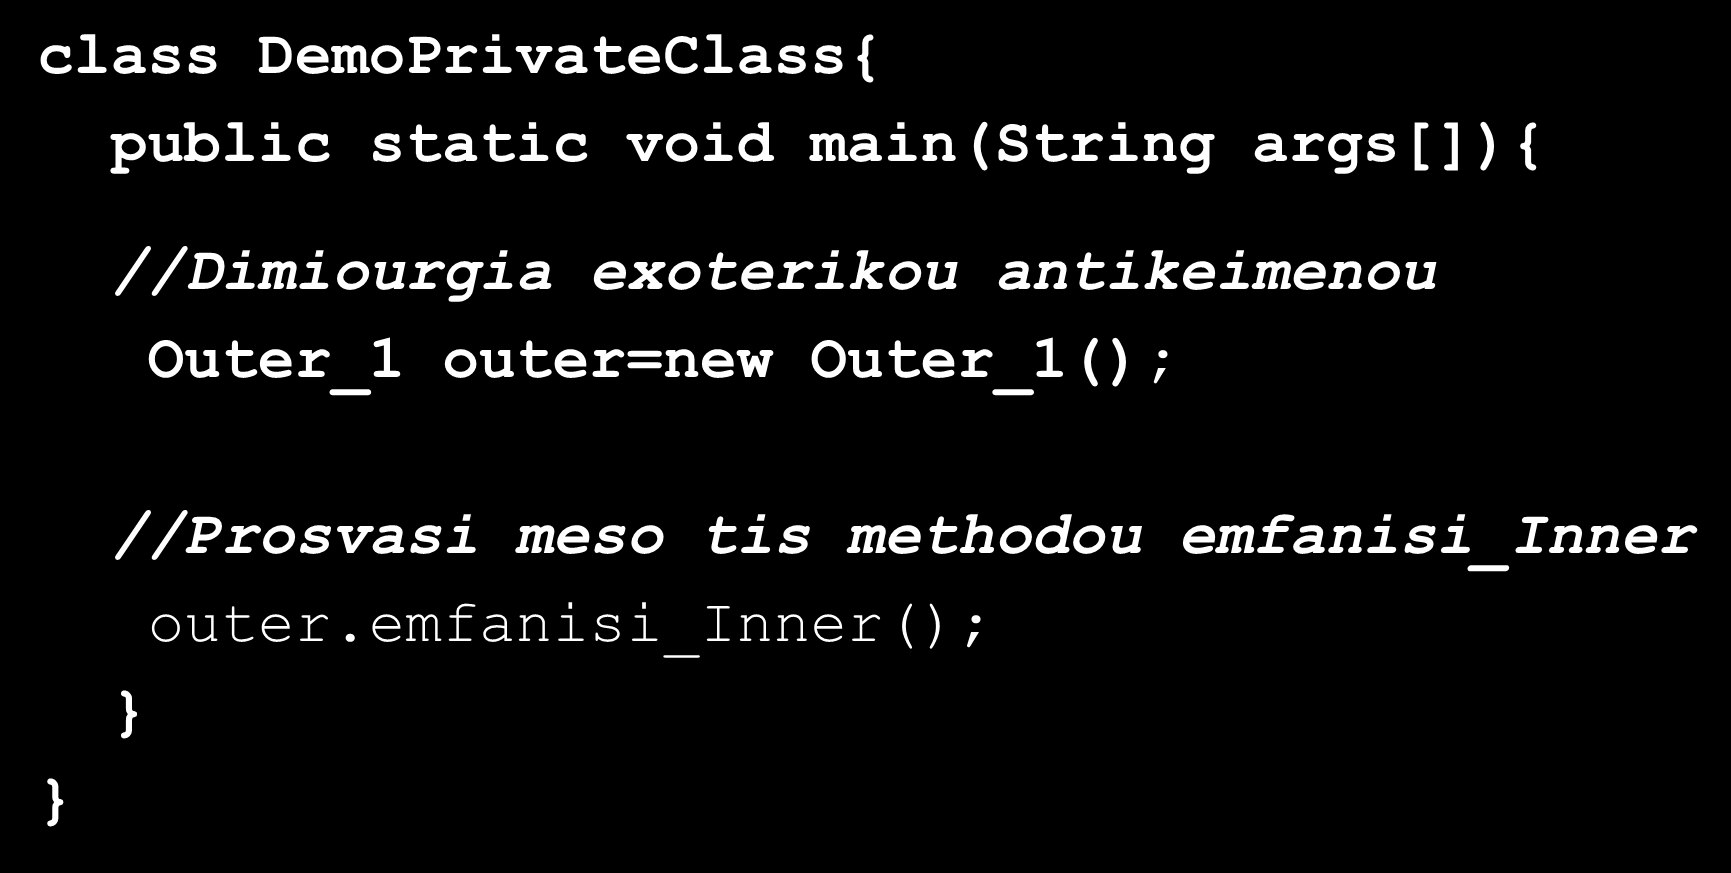 Εσωτερικές Κλάσεις (Inner Classes)(11/13) class DemoPrivateClass{ public static void main(string args[]){ //Dimiourgia